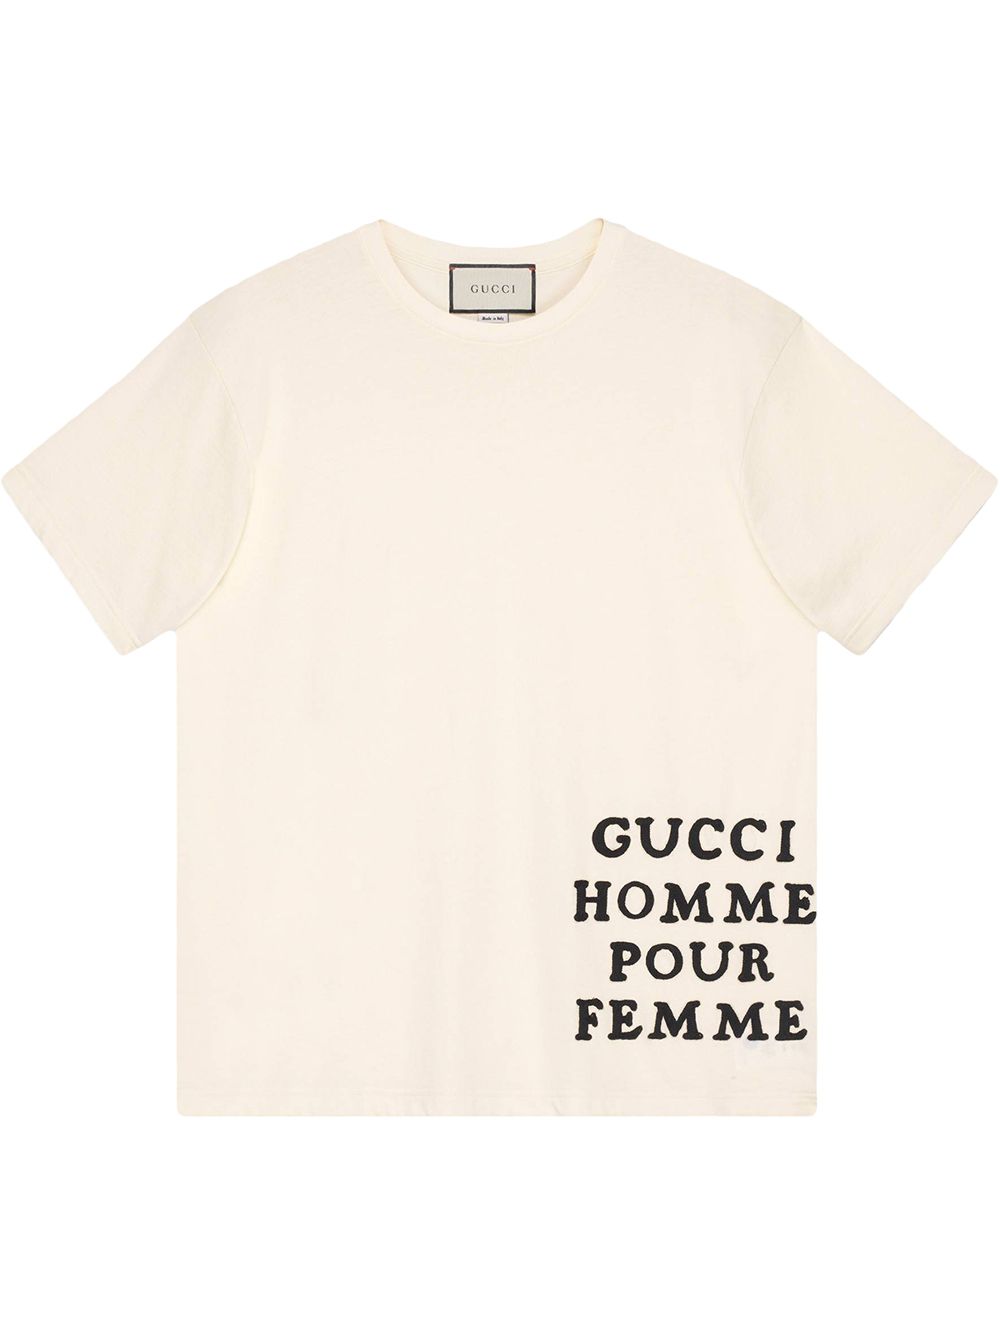 фото Gucci футболка оверсайз с аппликацией